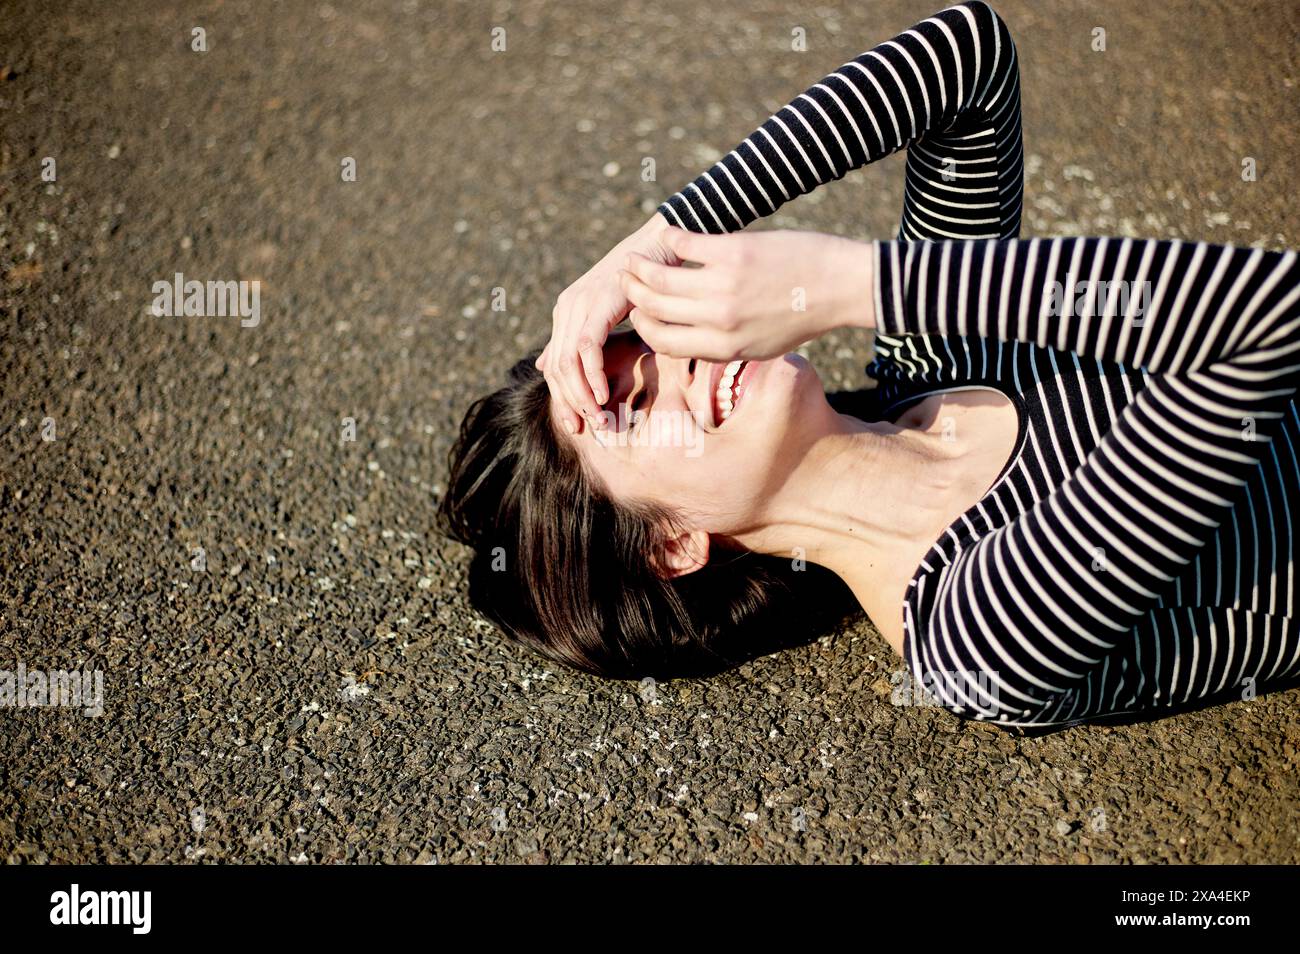 Eine Frau liegt auf dem Rücken auf dem Boden, lacht mit ihren Händen, die teilweise ihr Gesicht bedecken, und trägt ein gestreiftes Top. Stockfoto